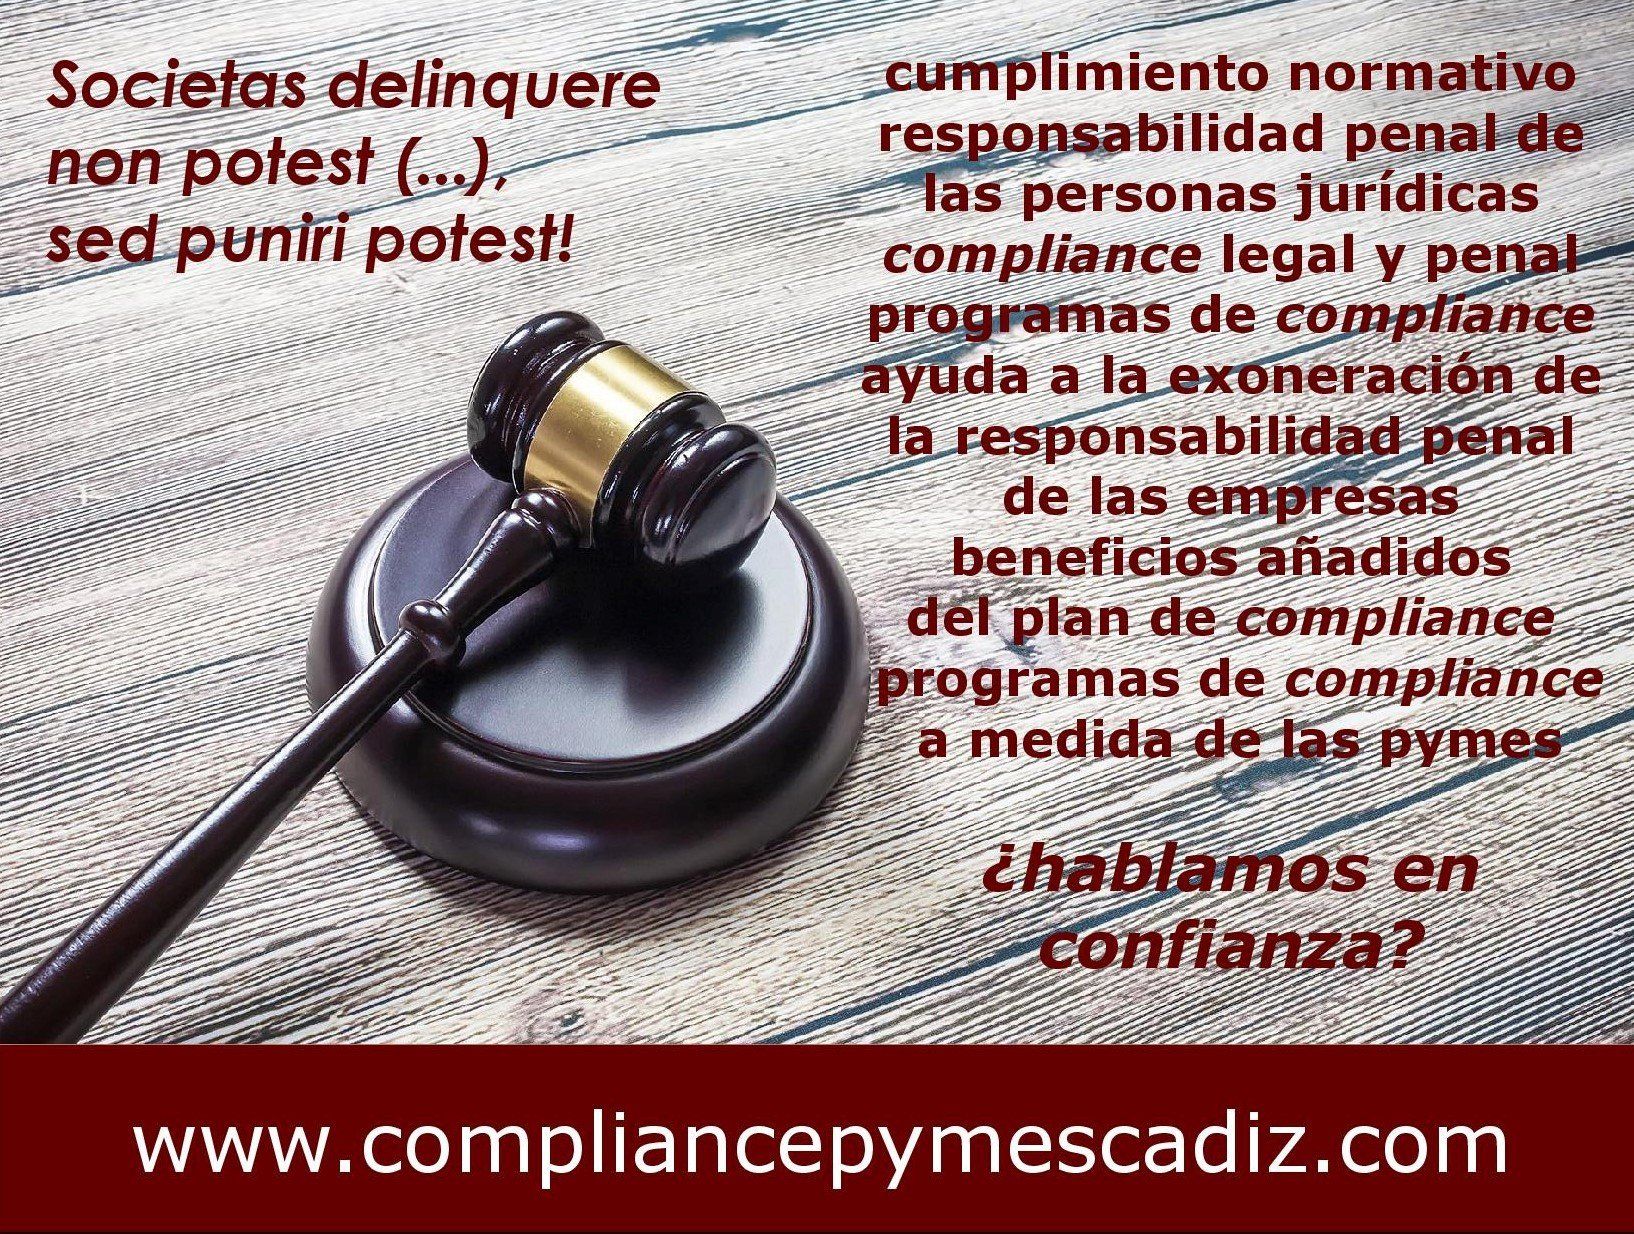 Cumplimiento Normativo. Compliance Legal y Penal. Responsabilidad Penal de Personas Jurídicas y Empresas